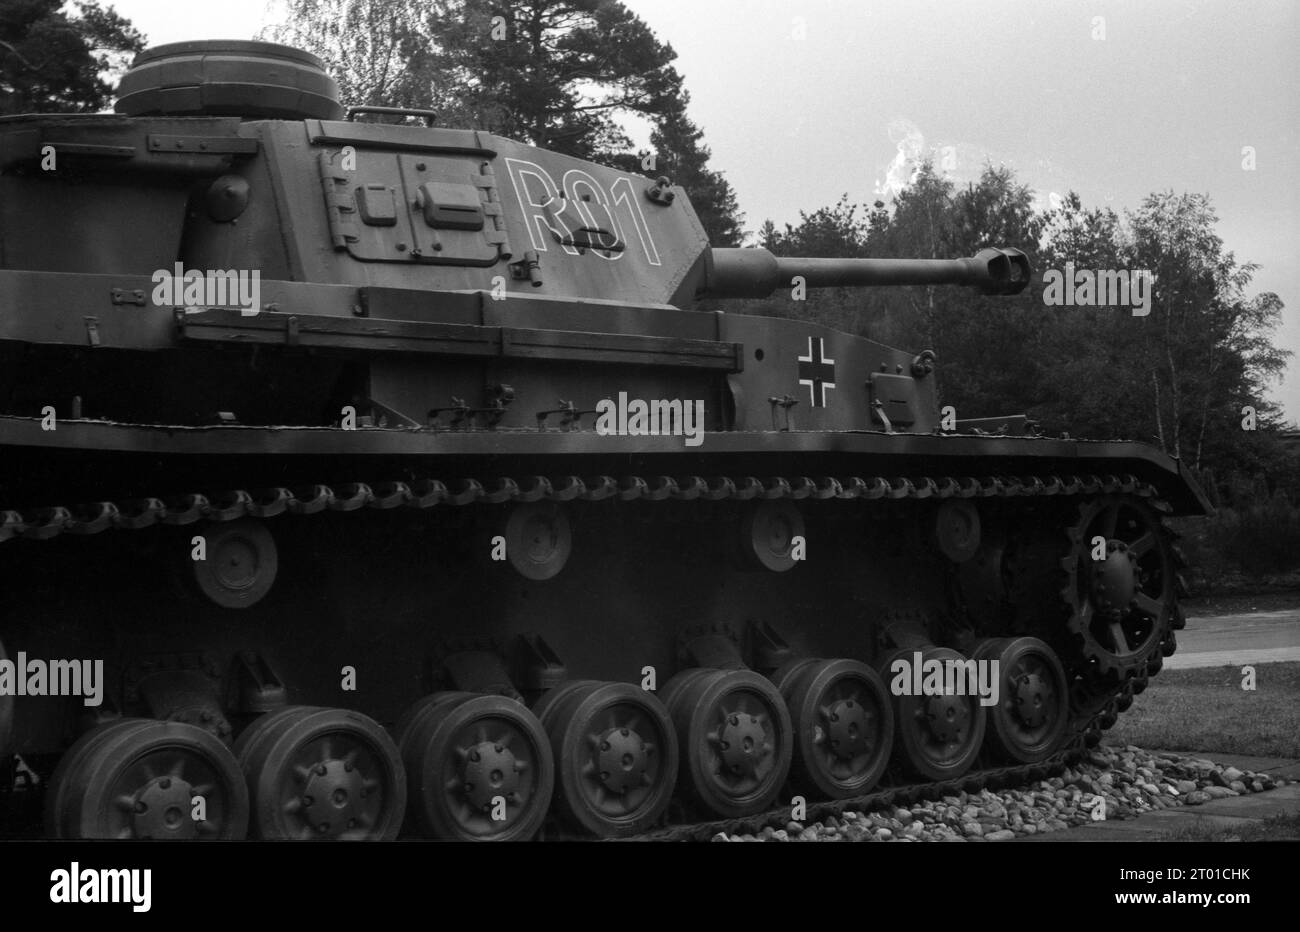 Befehlspanzer / Befehlspanzerwagen Panzerkampfwagen IV PzKpfw IV Panzer IV Ausf. H Stock Photo